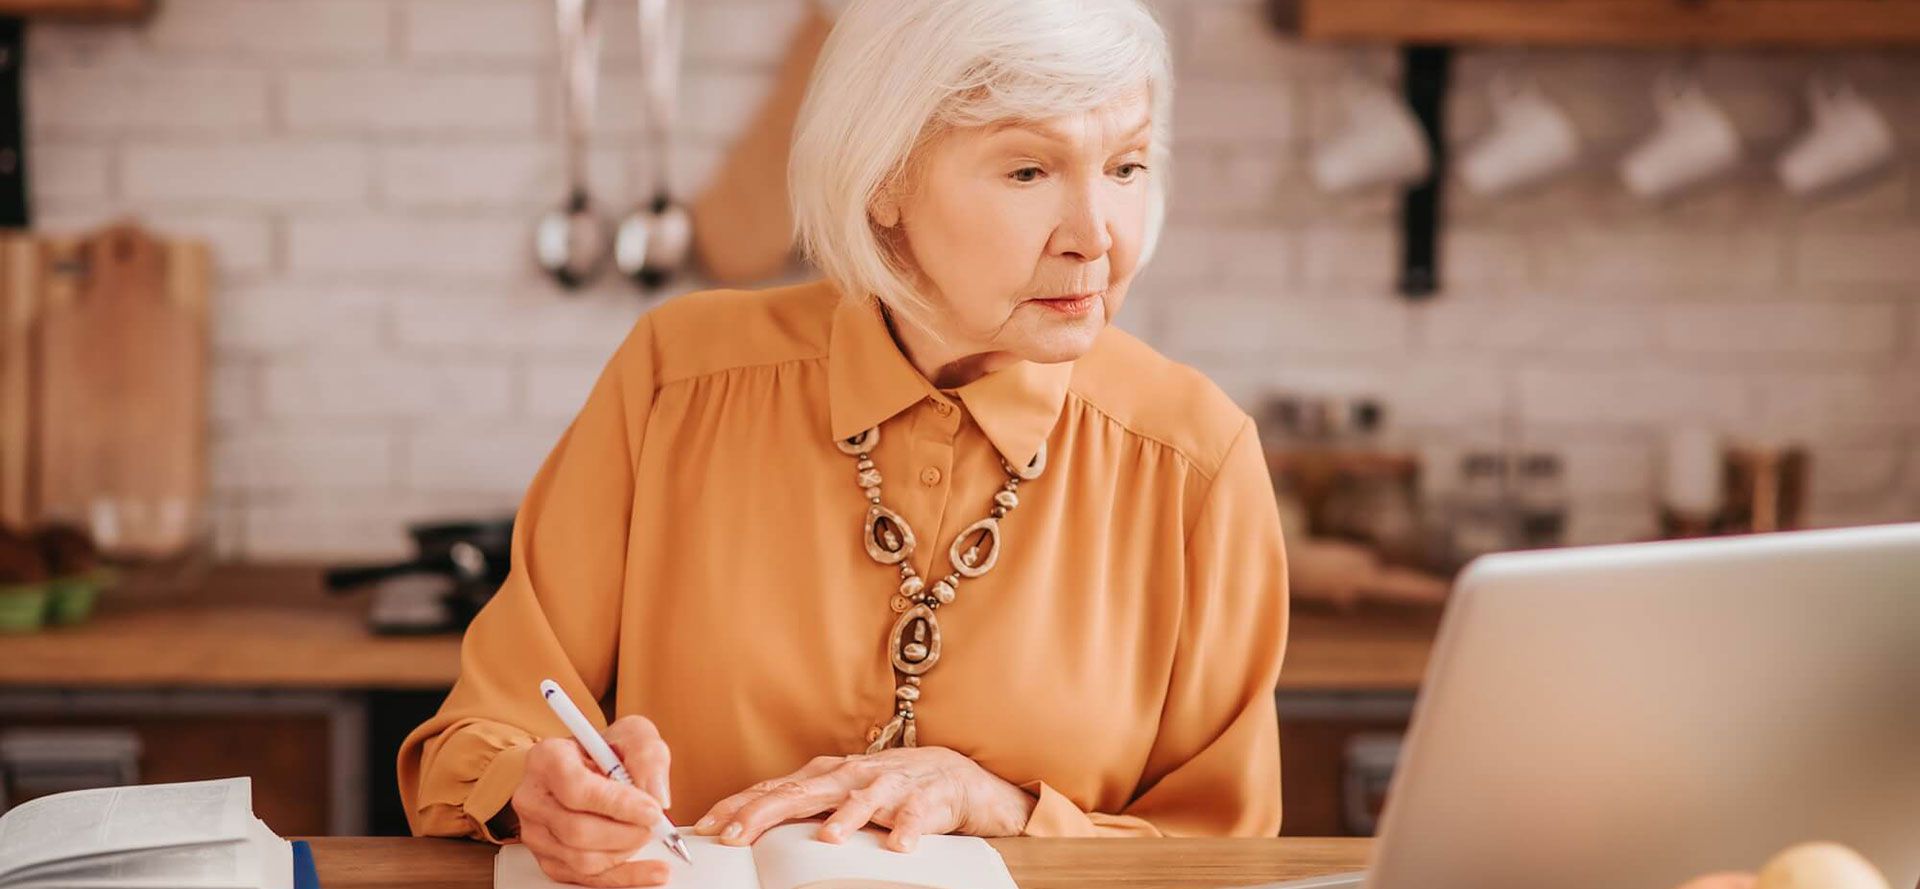 Die ältere Frau im gelben Hemd sucht ihren Seelenverwandten auf einer Senioren-Dating-Website.